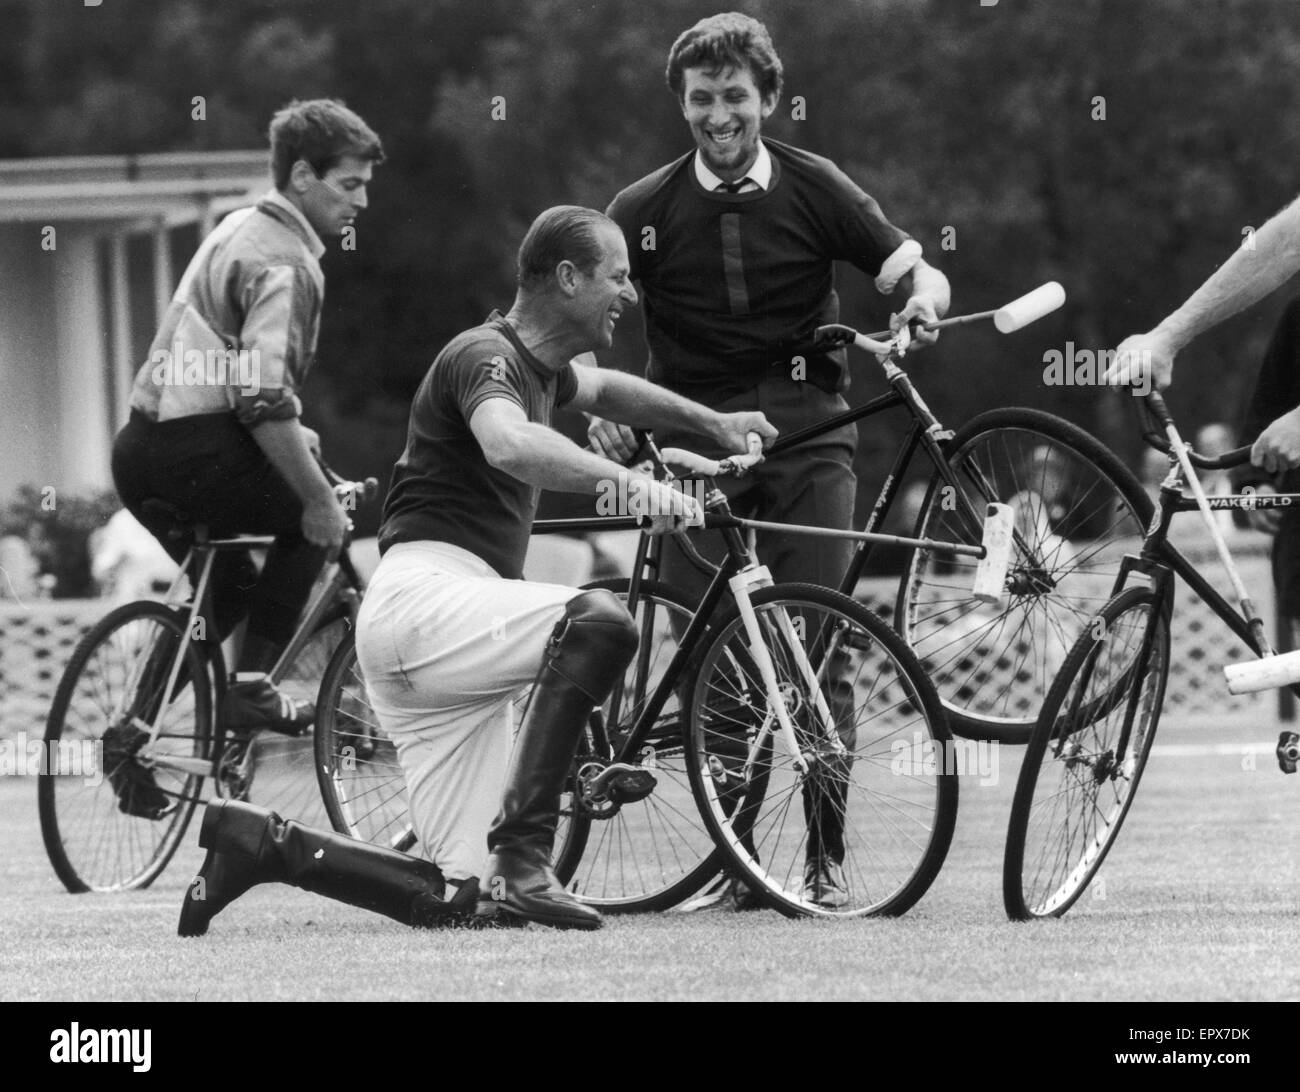 Il principe Filippo ha accettato la sfida della bicicletta polo sul famoso campo di polo a Windsor il 6 agosto 1967. Egli è raffigurato qui dopo essere stato tolto in una collisione con un compagno di squadra a Windsor. L'unico incidente - uno piegato la ruota di bicicletta. Il 6 agosto 1967. Foto Stock